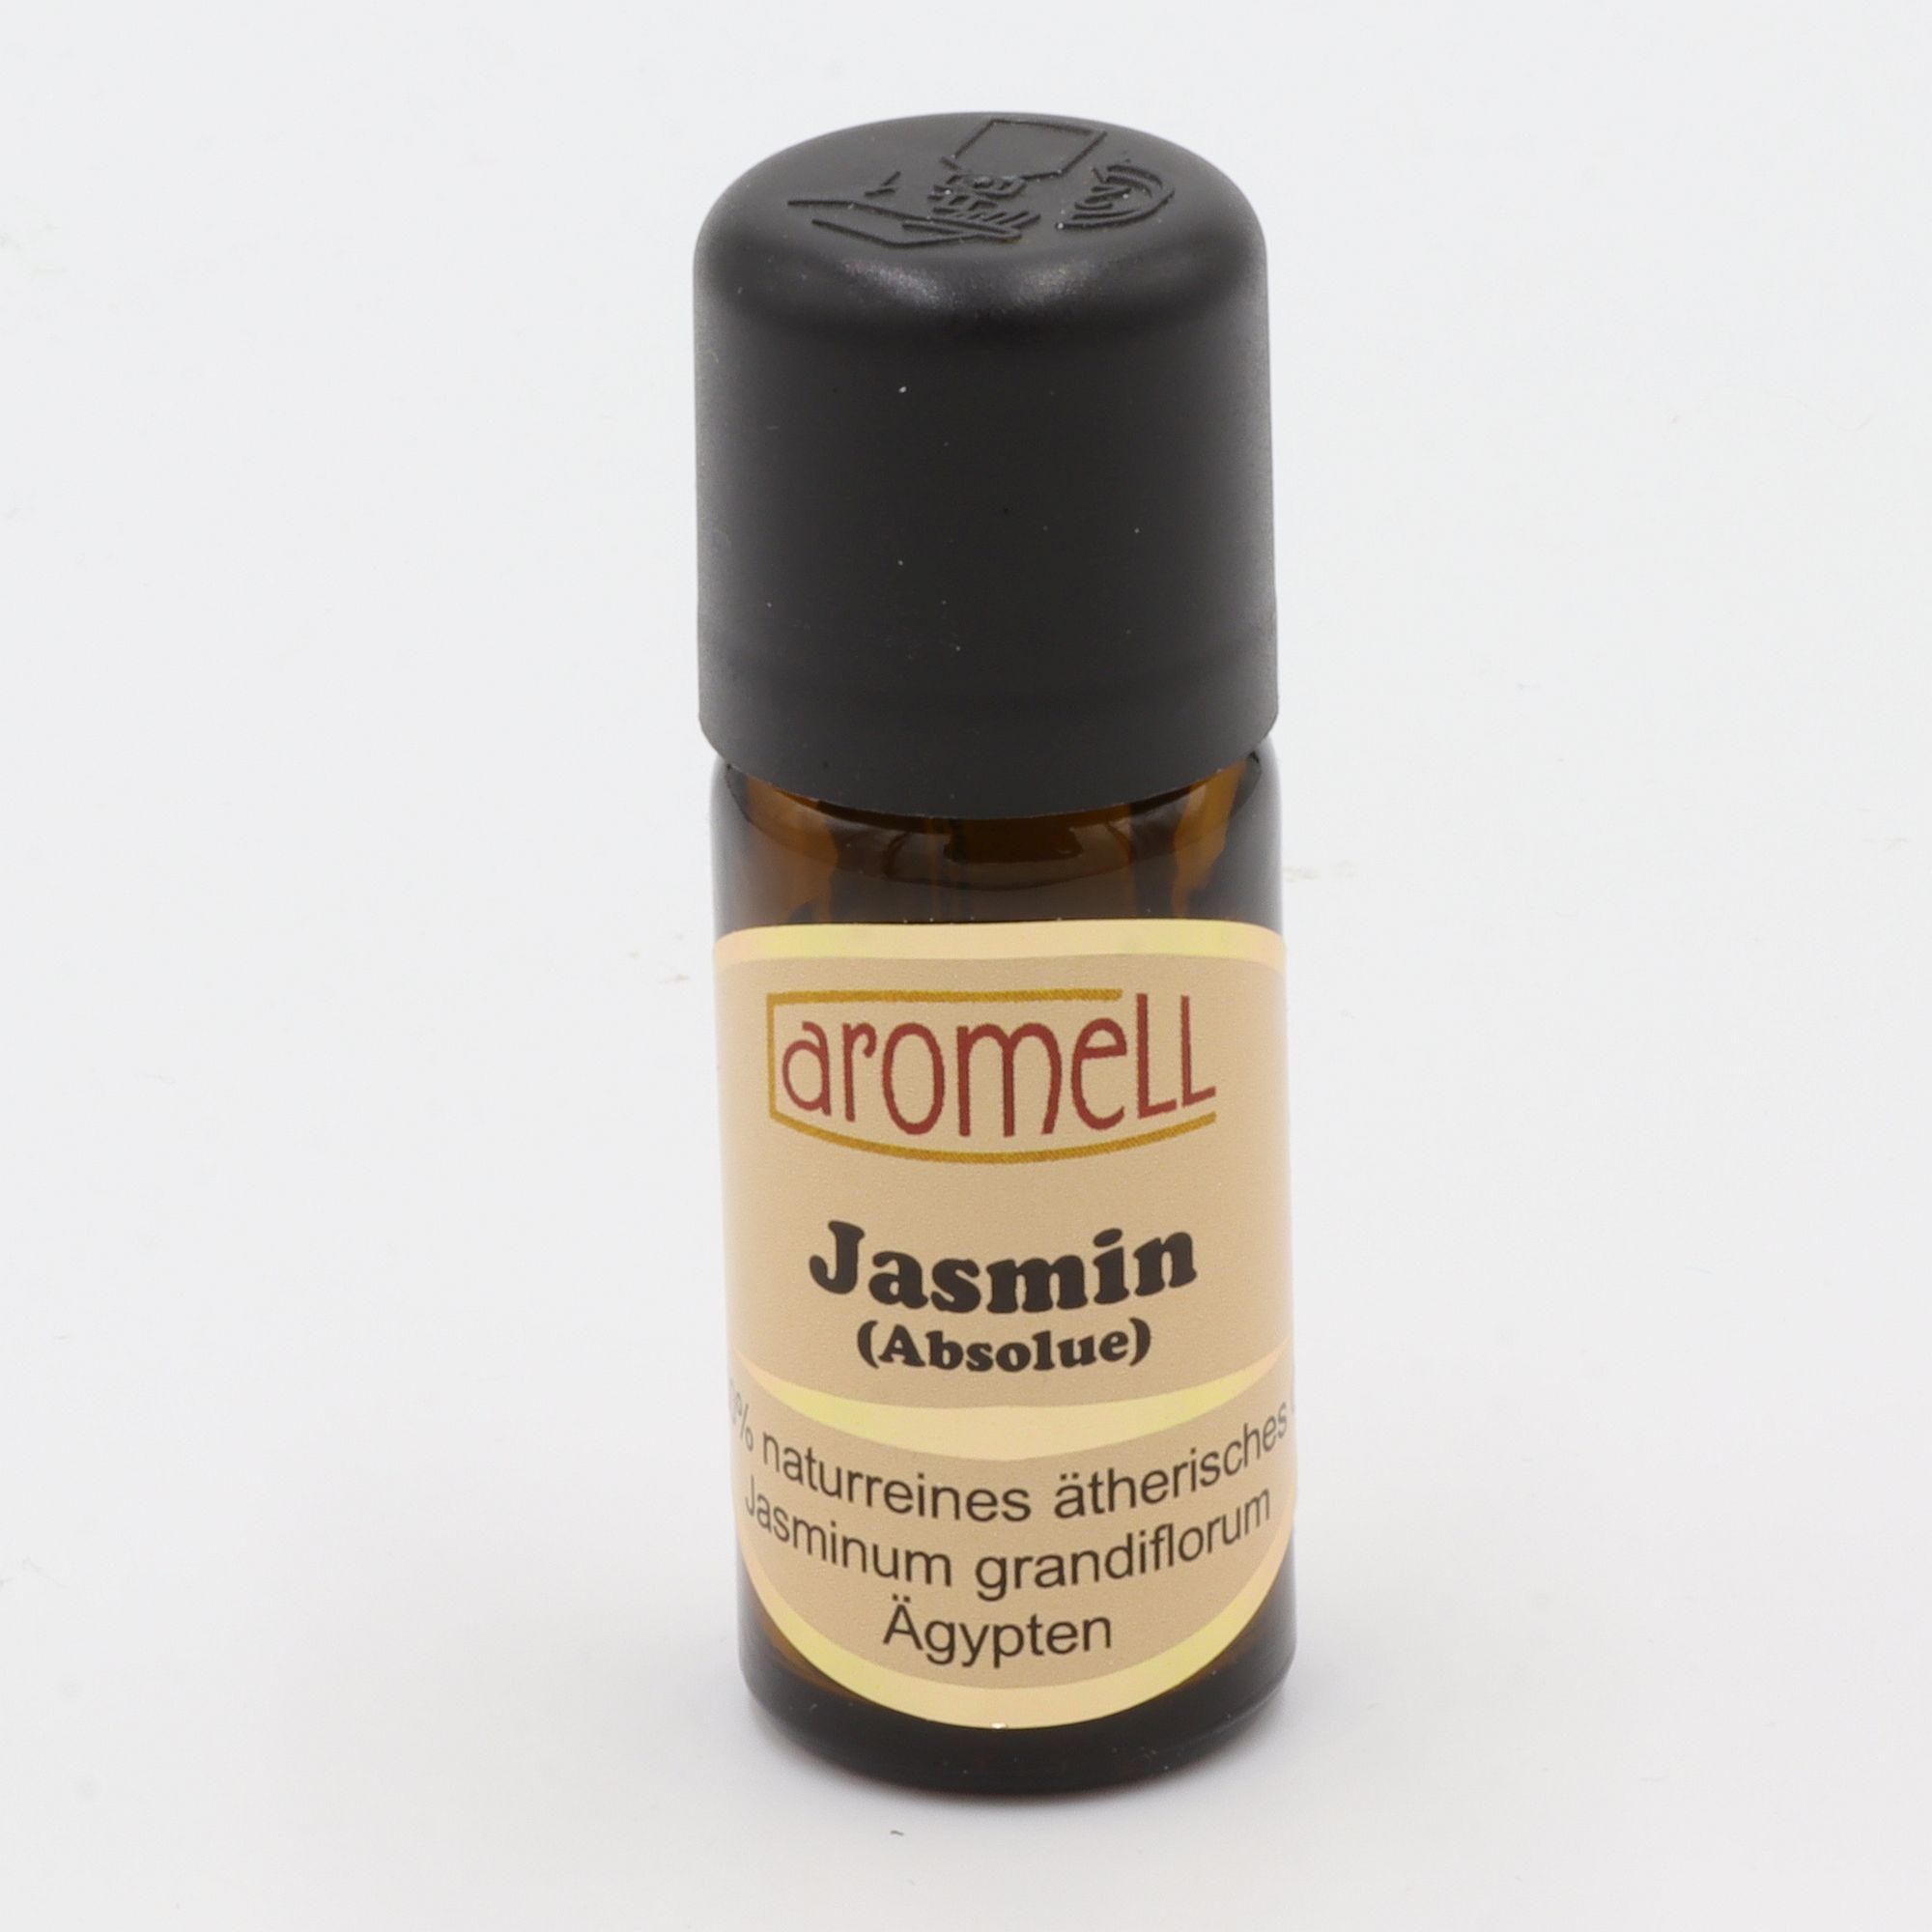 Ätherisches Öl - Aromell - Jasmin (Absolue) - 100% naturrein - Jasminum Grandiflorum aus Ägypten - aromatischer Raumduft für Dein Wohlbefinden - Glas mit Tropfendosierung